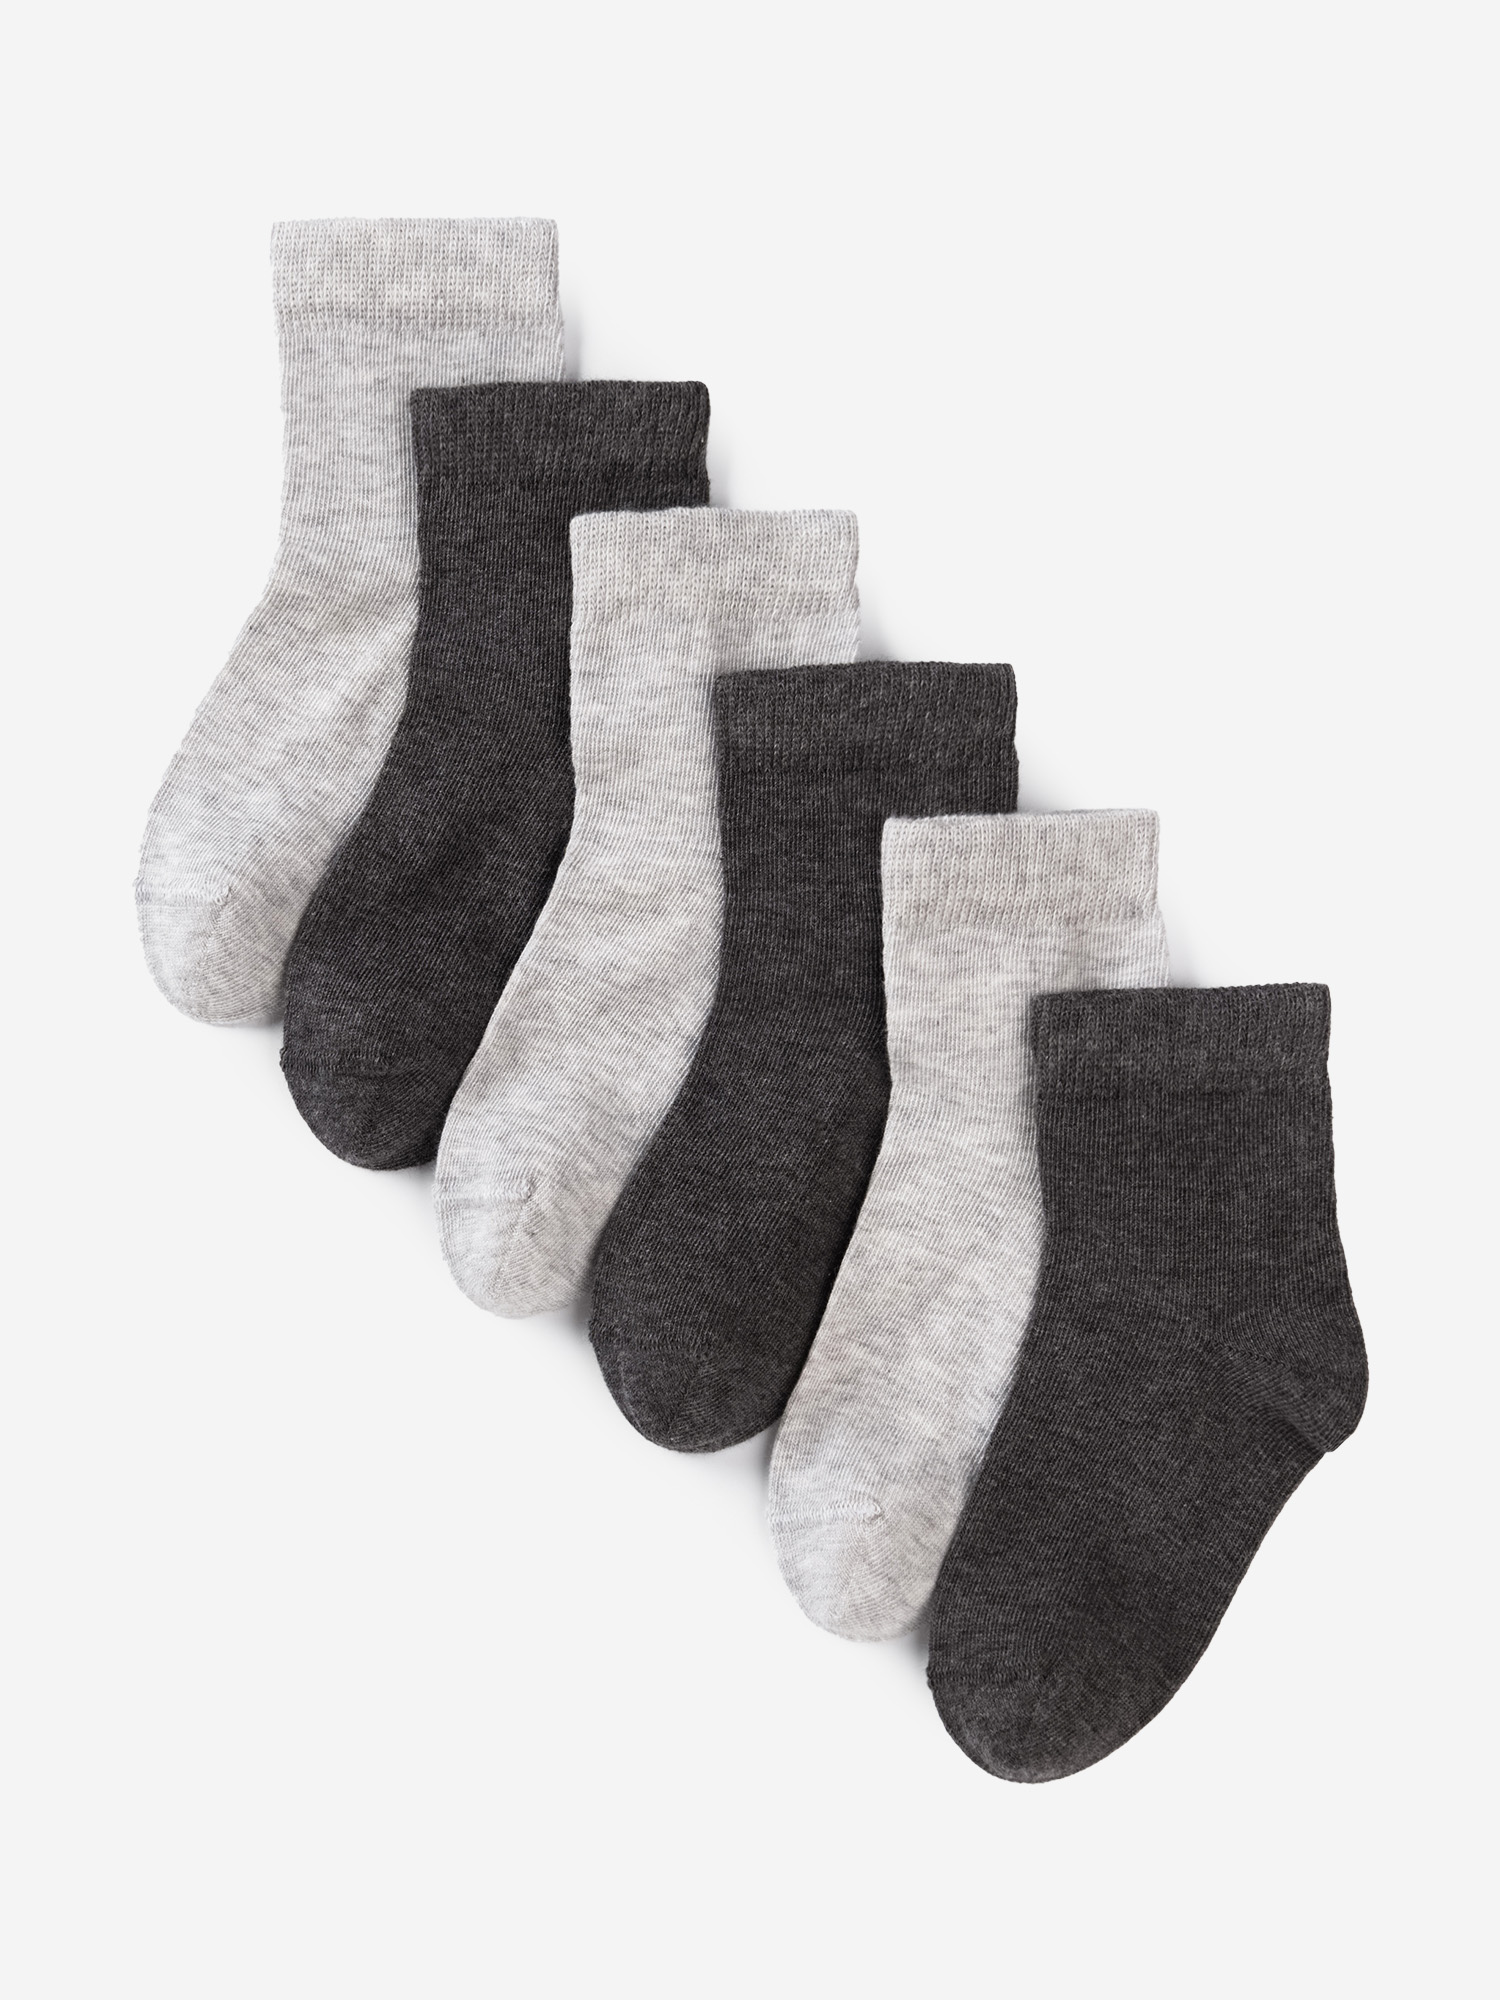 Носки для детей малышей хлопок набор 6 пары Artie, Серый